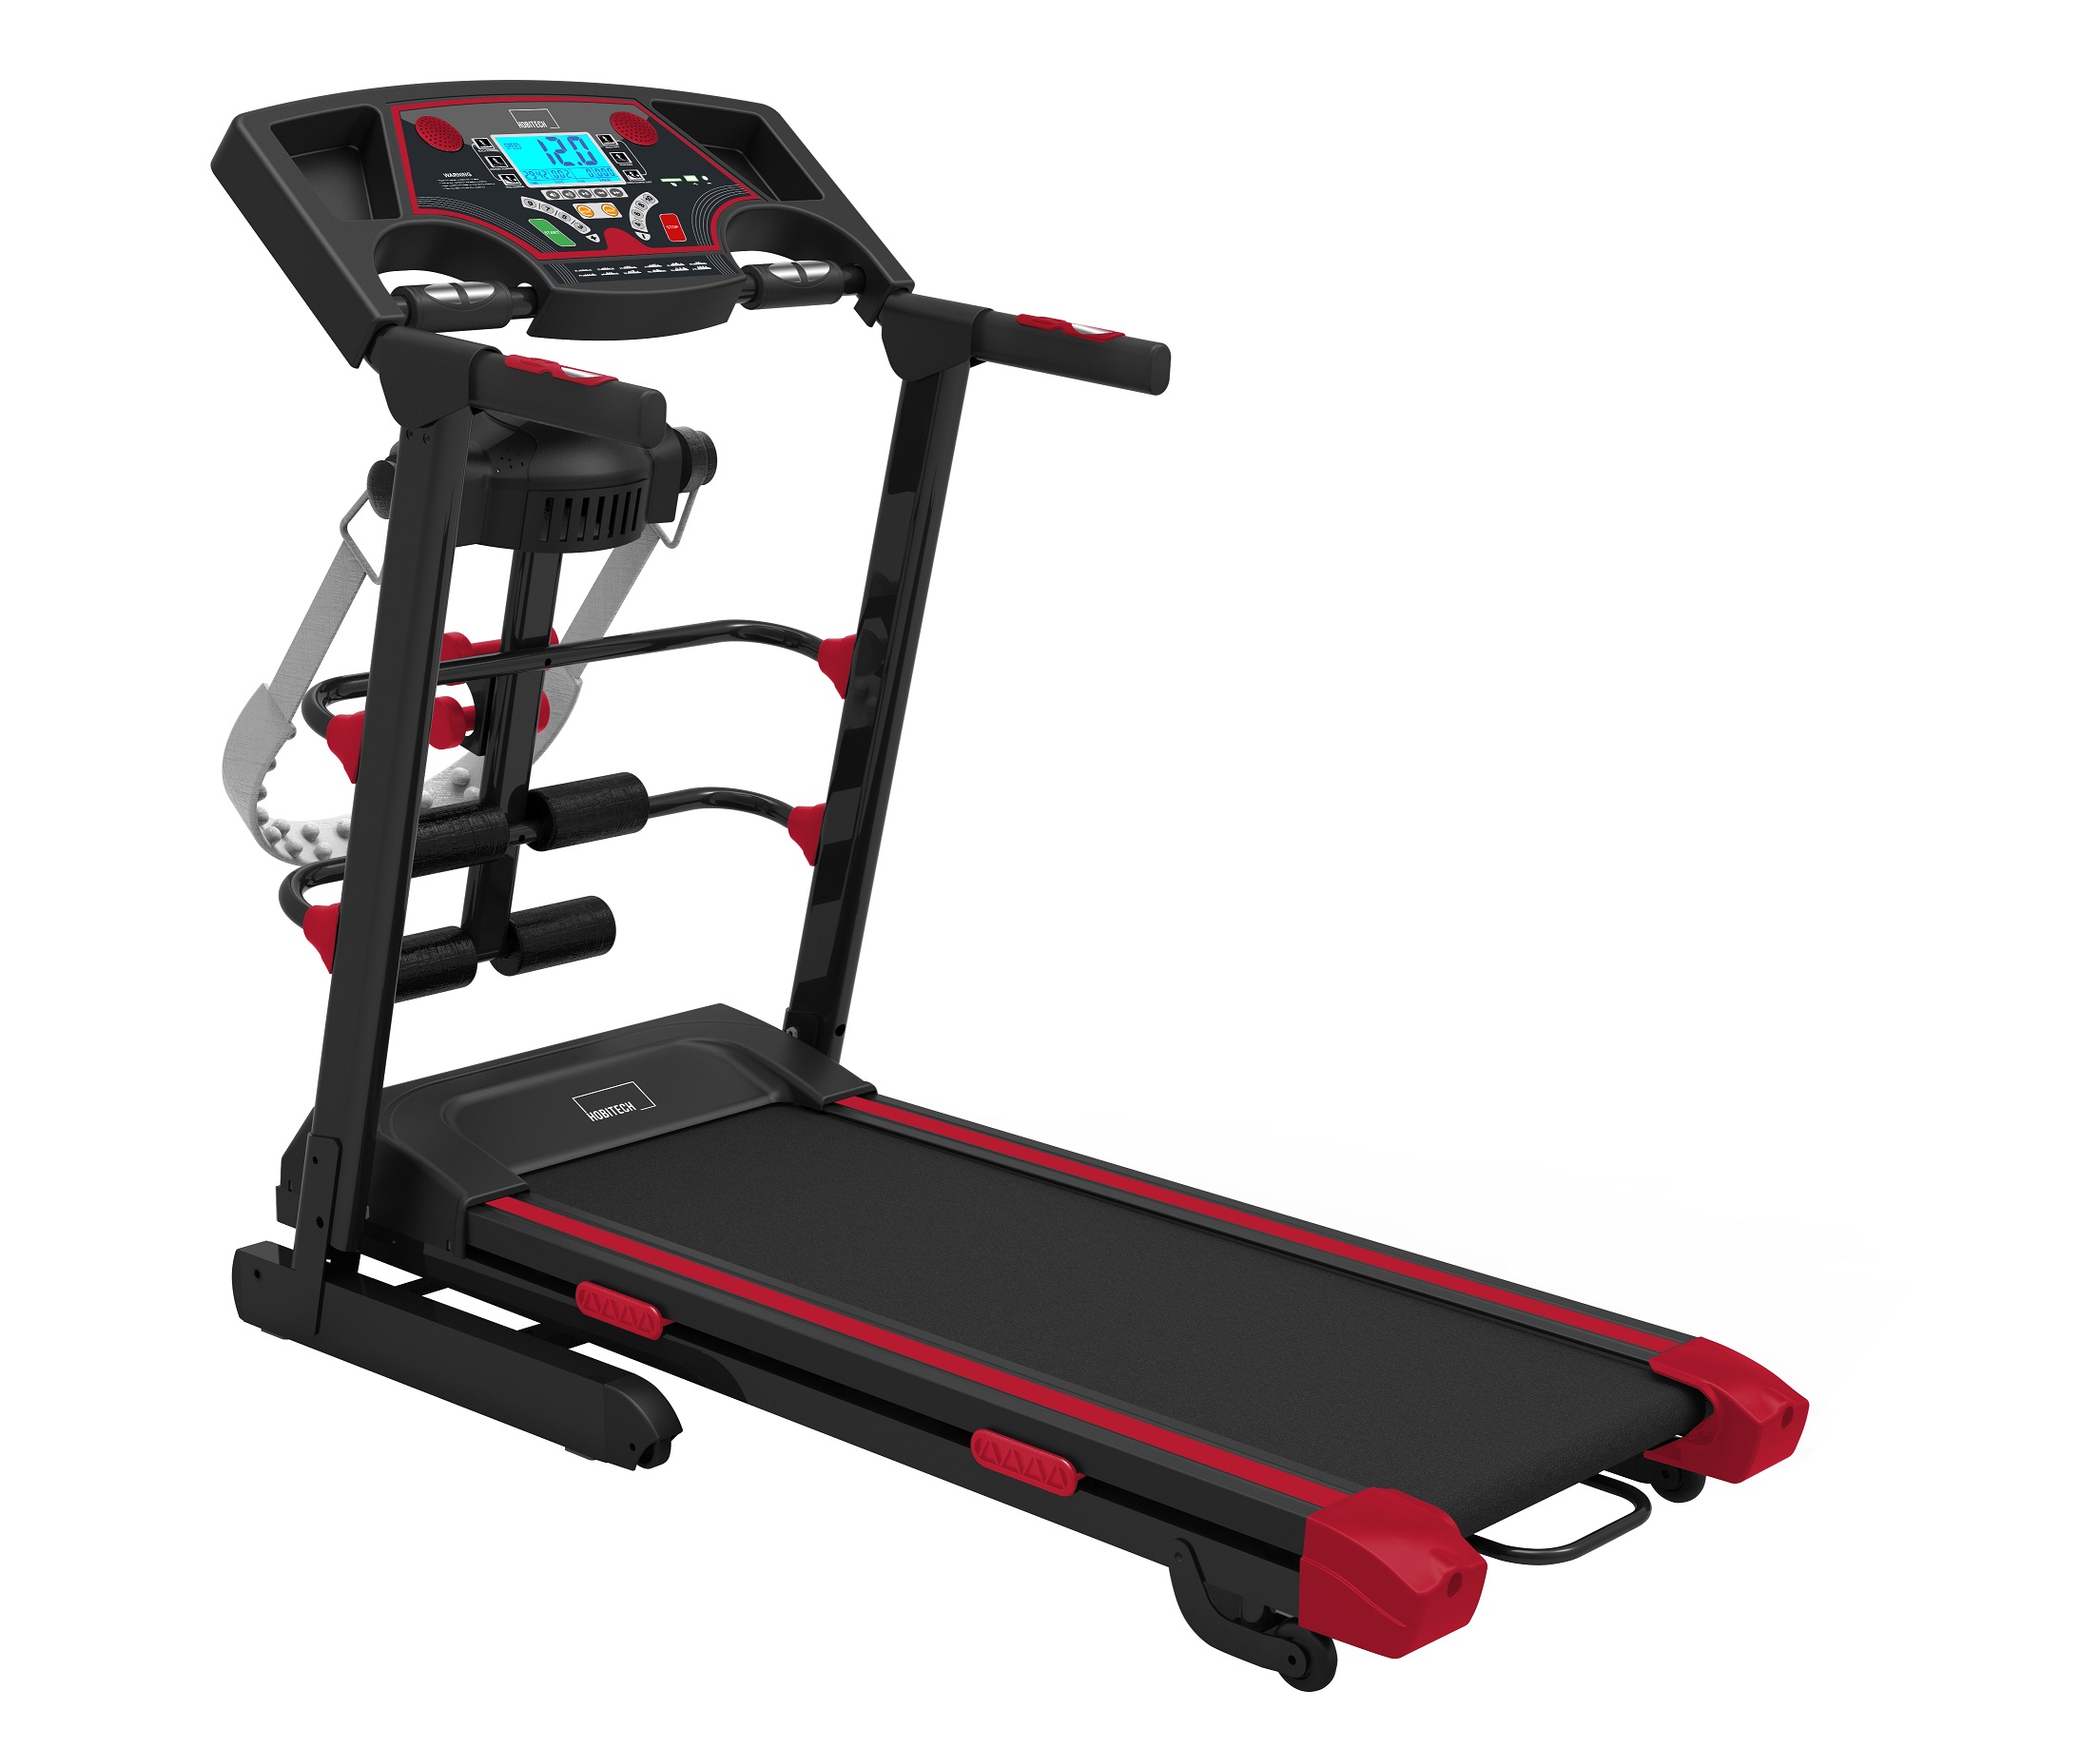 Cinta De Correr 2hp Multi Gym Inclinación Y Programas Automáticos - negro-rojo - 